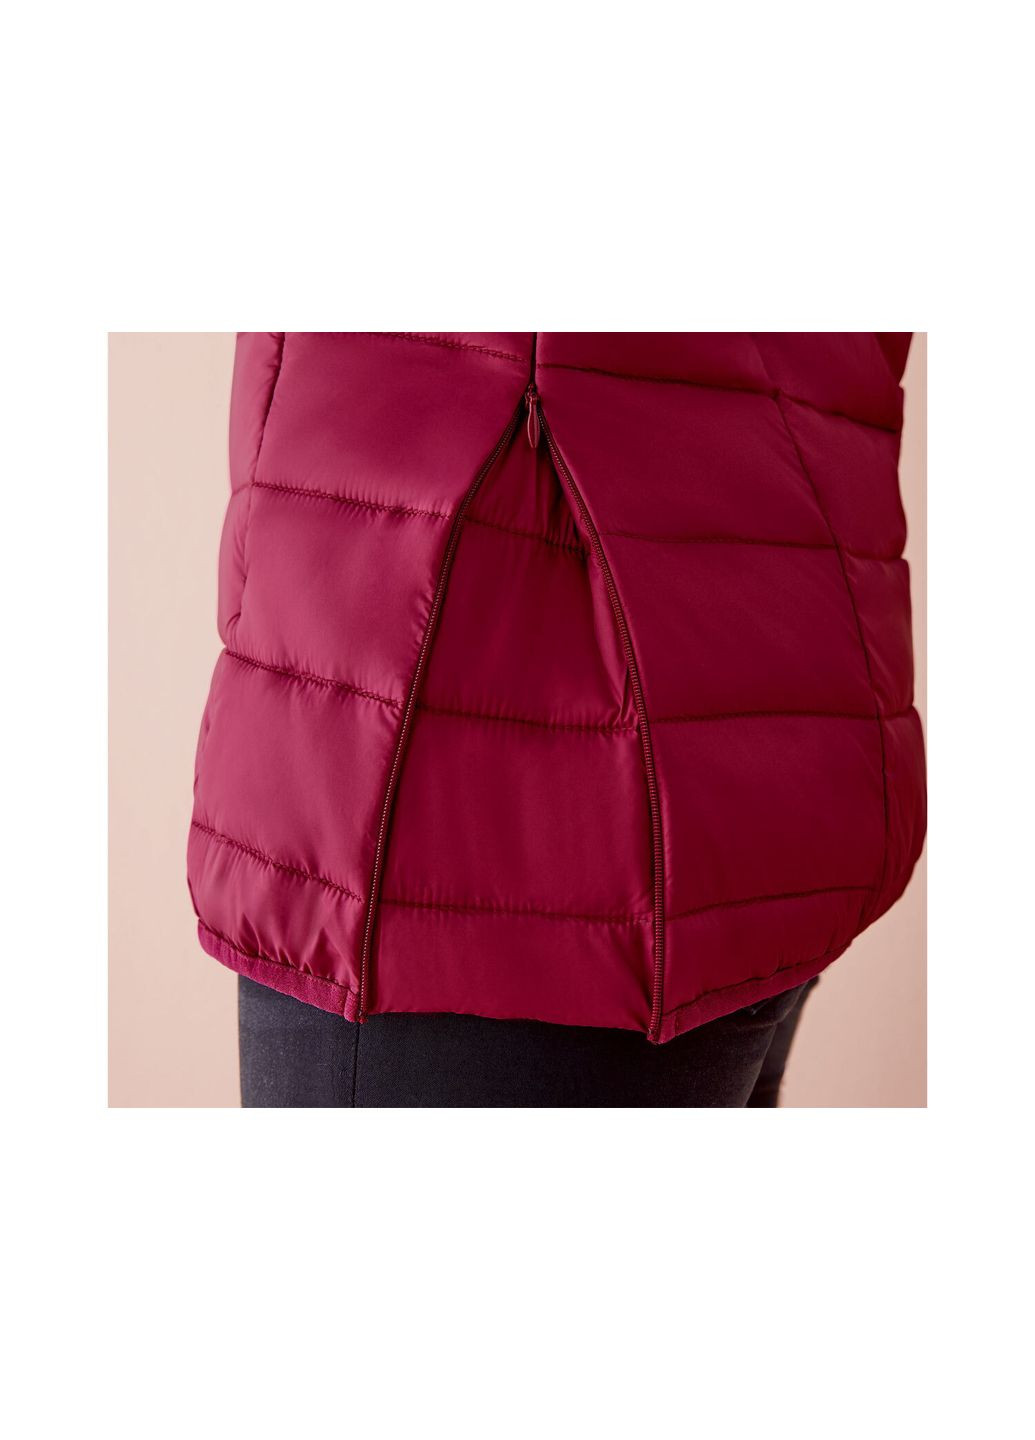 Бордовая демисезонная куртка демисезонная для беременных и слингокуртка 3 в 1 для женщины bionic-finish® eco 357573 Esmara